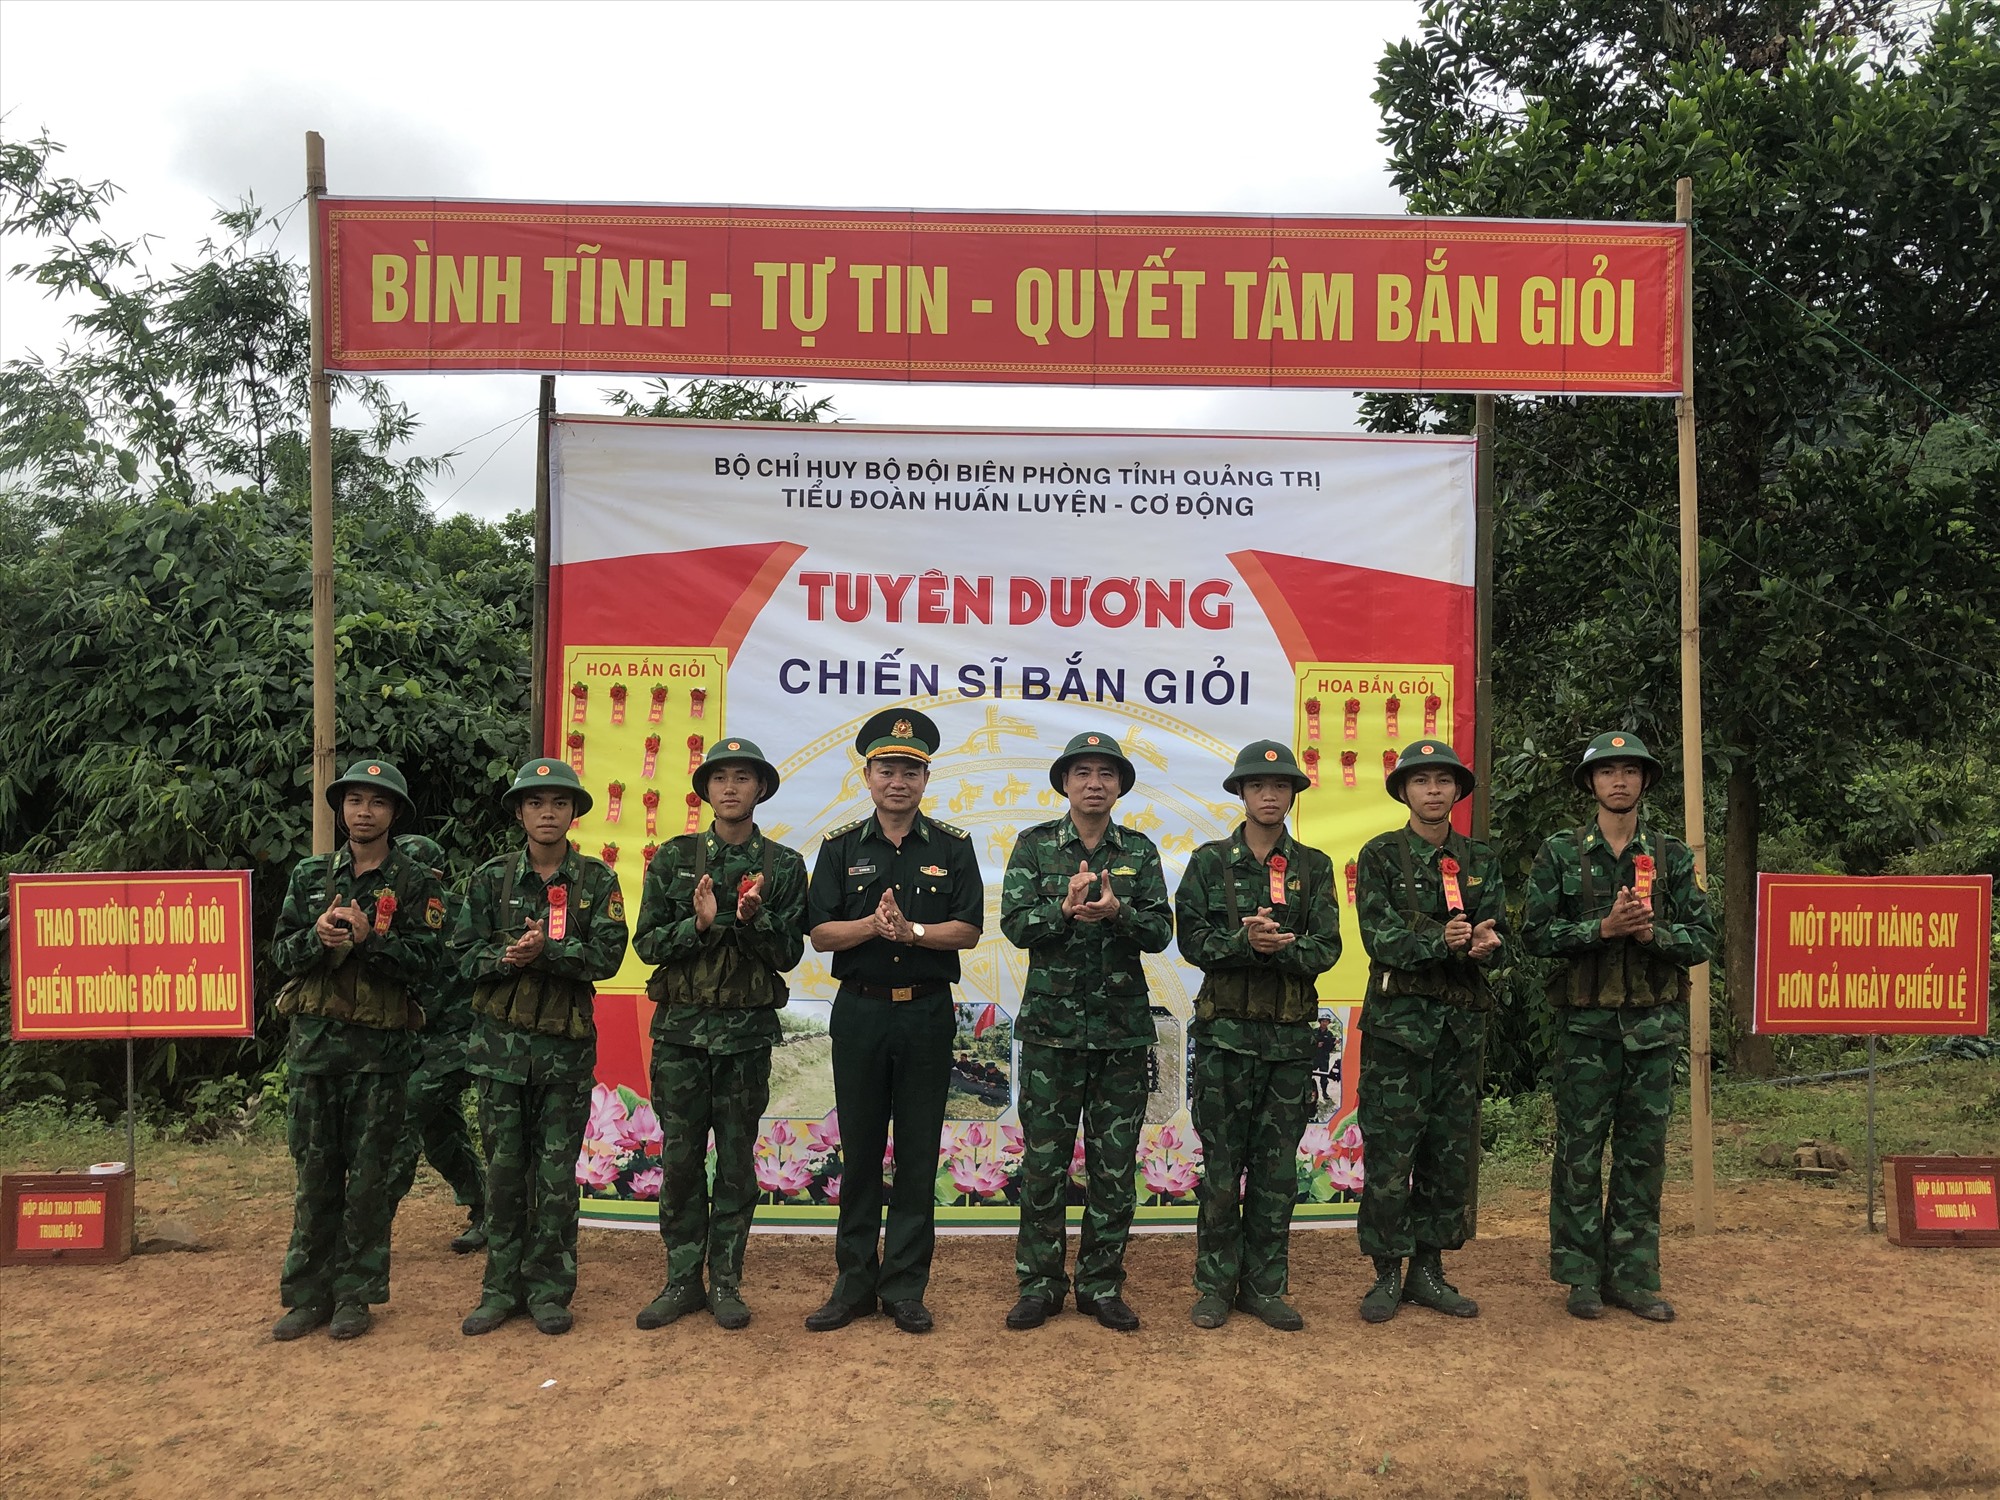 Thượng tá Tạ Quang Hậu - Phó tham mưu trưởng và chỉ huy đơn vị tặng hoa bắn giỏi cho các đồng chí bắn AK bài 1 đạt kết quả cao